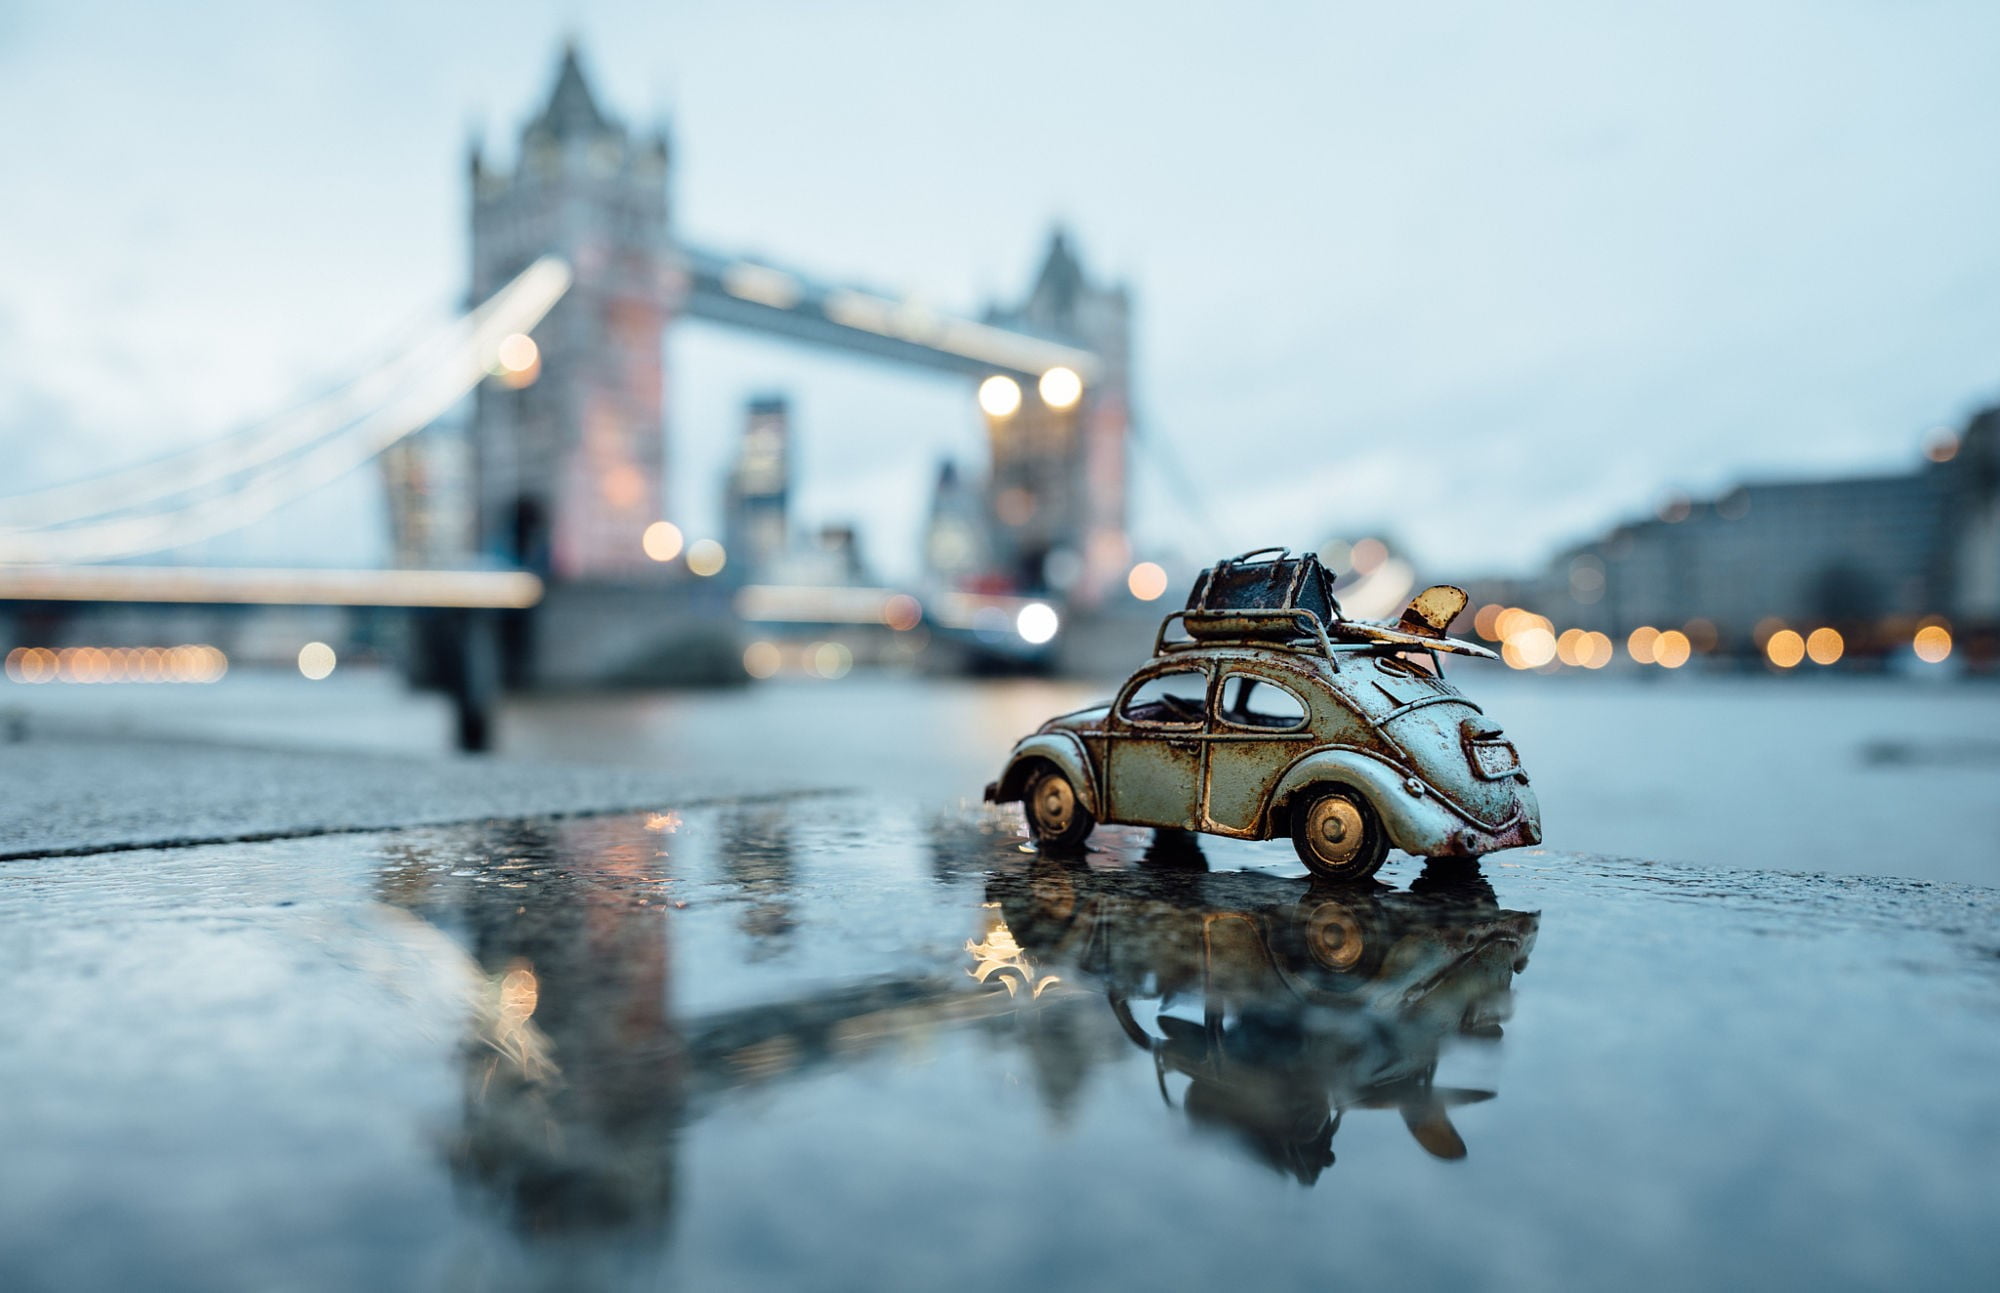 gray toy car, water, city, urban, rain, toys, London, illuminated